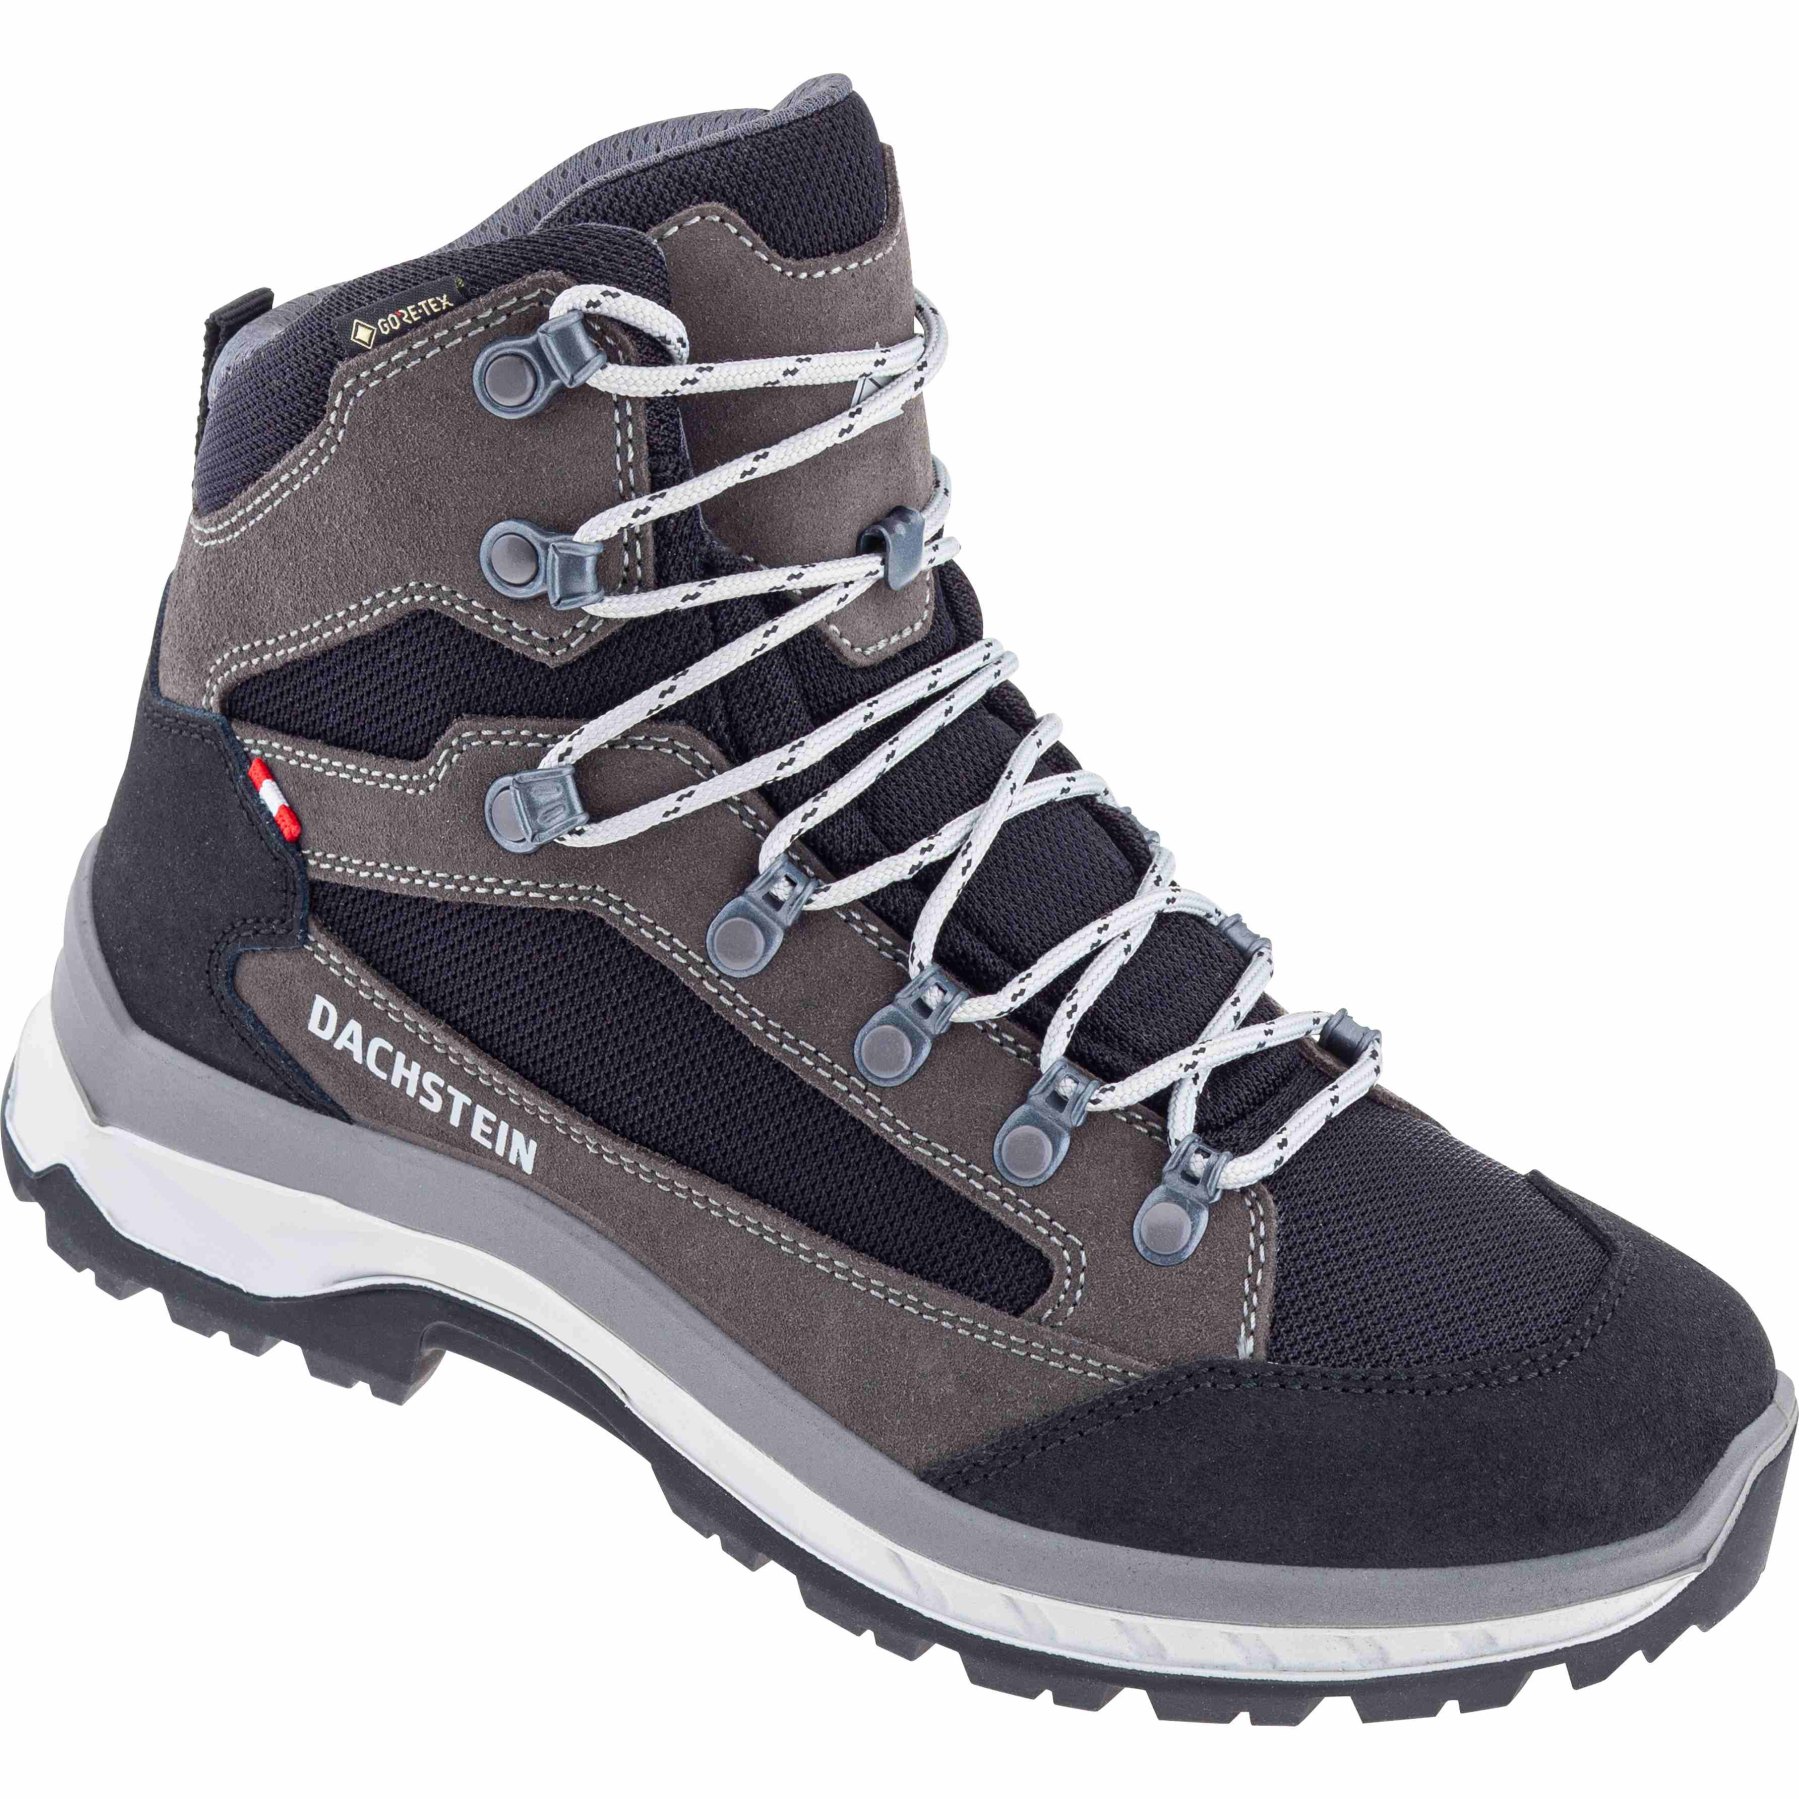 Productfoto van Dachstein Sonnstein GTX Women&#039;s Hiking Shoes - granite